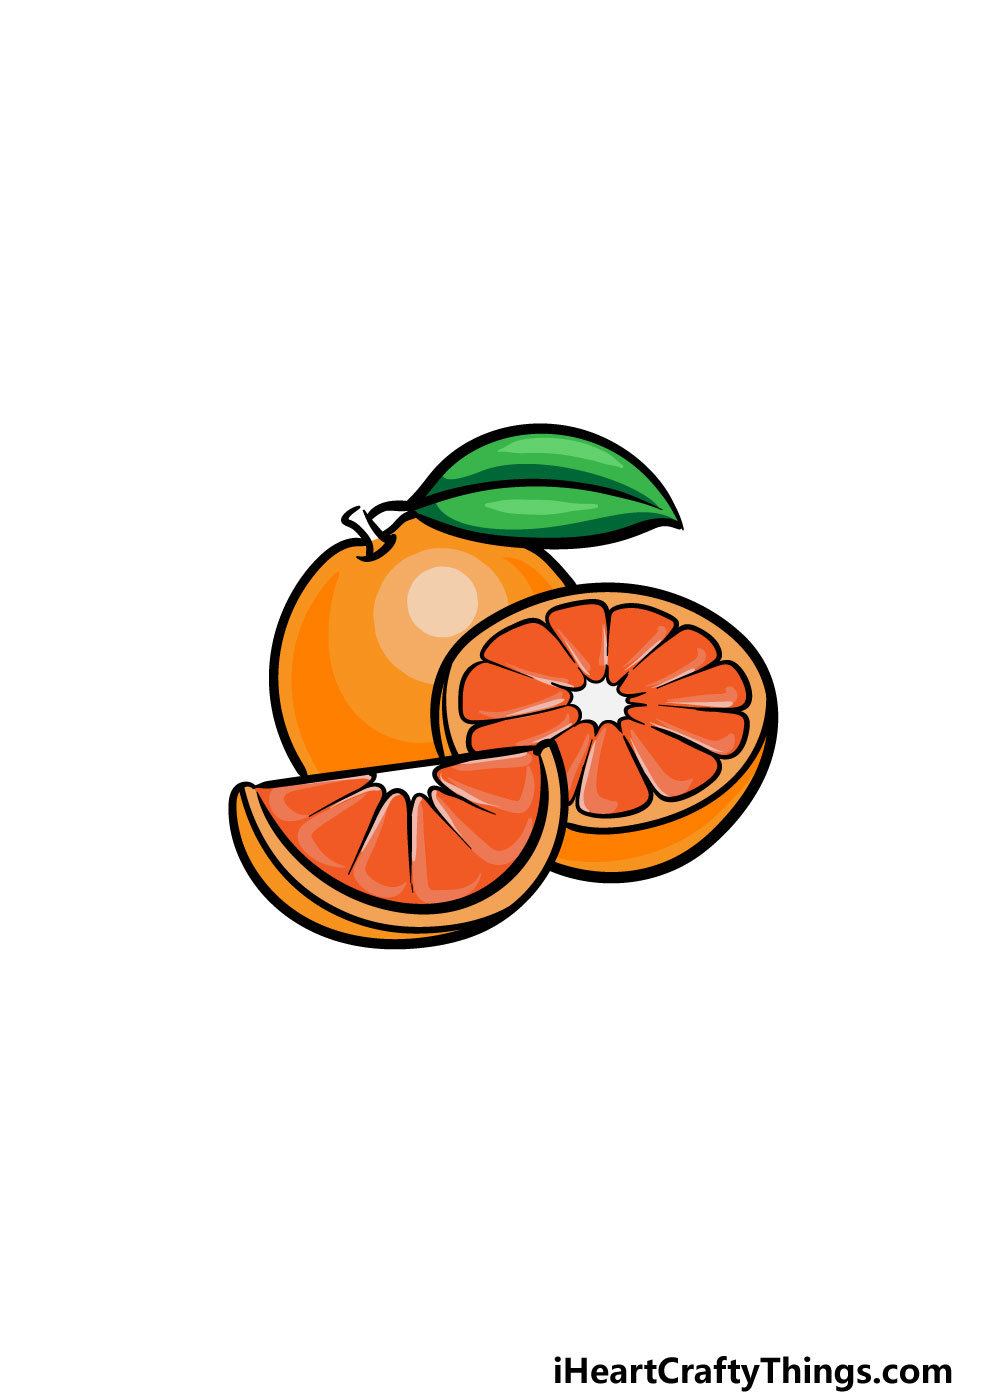 Как нарисовать рисунок апельсин из игры Rainbow friends